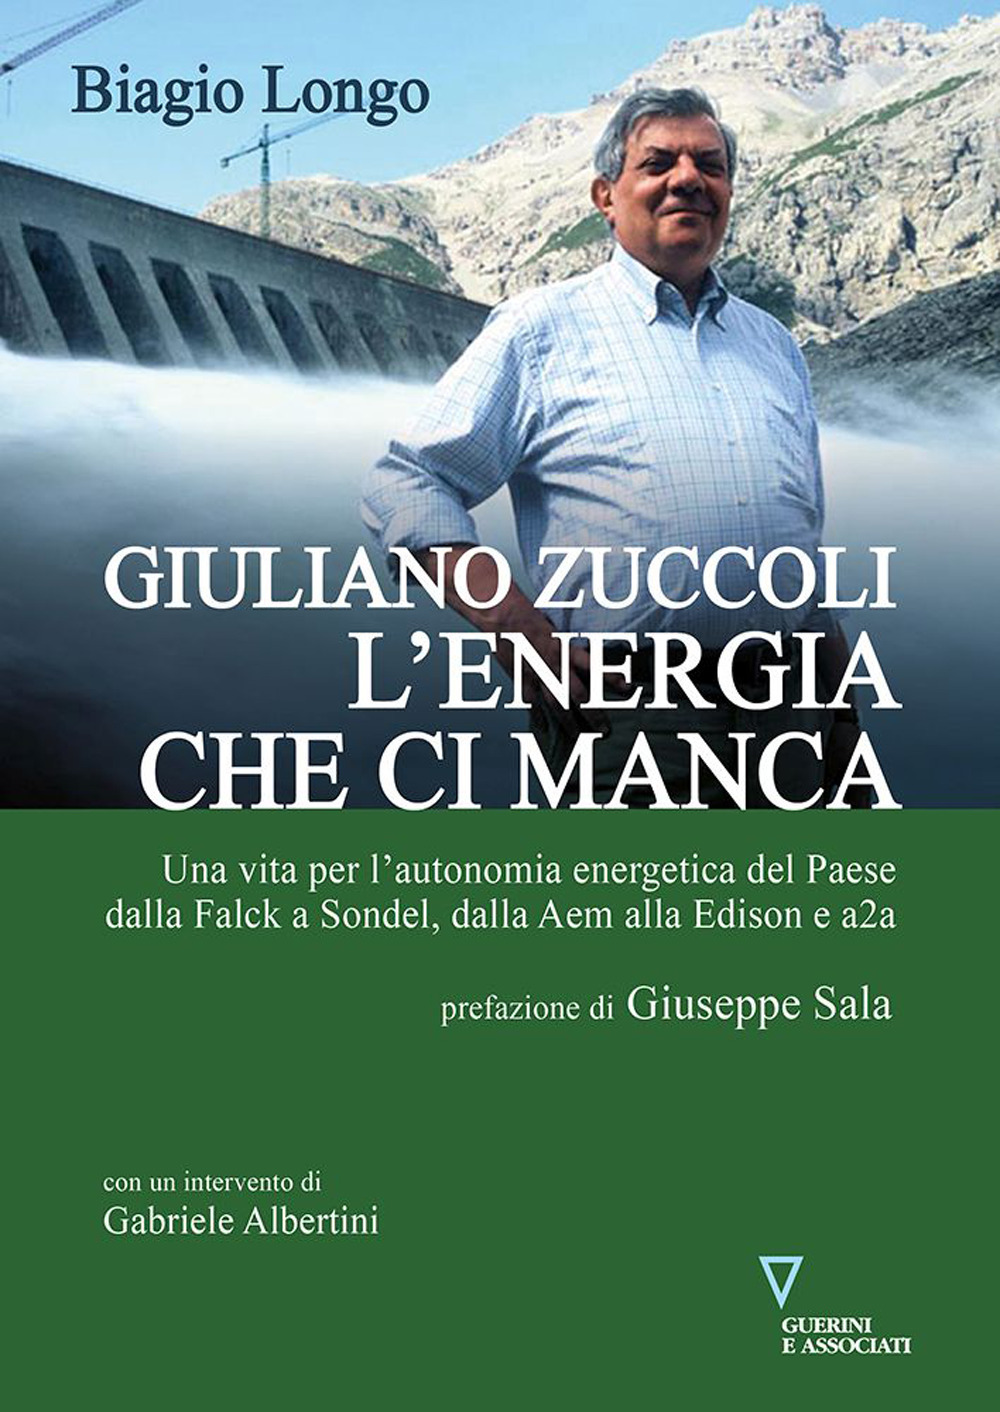 Giuliano Zuccoli. L'energia che ci manca. Una vita per l'autonomia energetica del Paese dalla Falck a Sondel, dalla Aem alla Edison e a2a